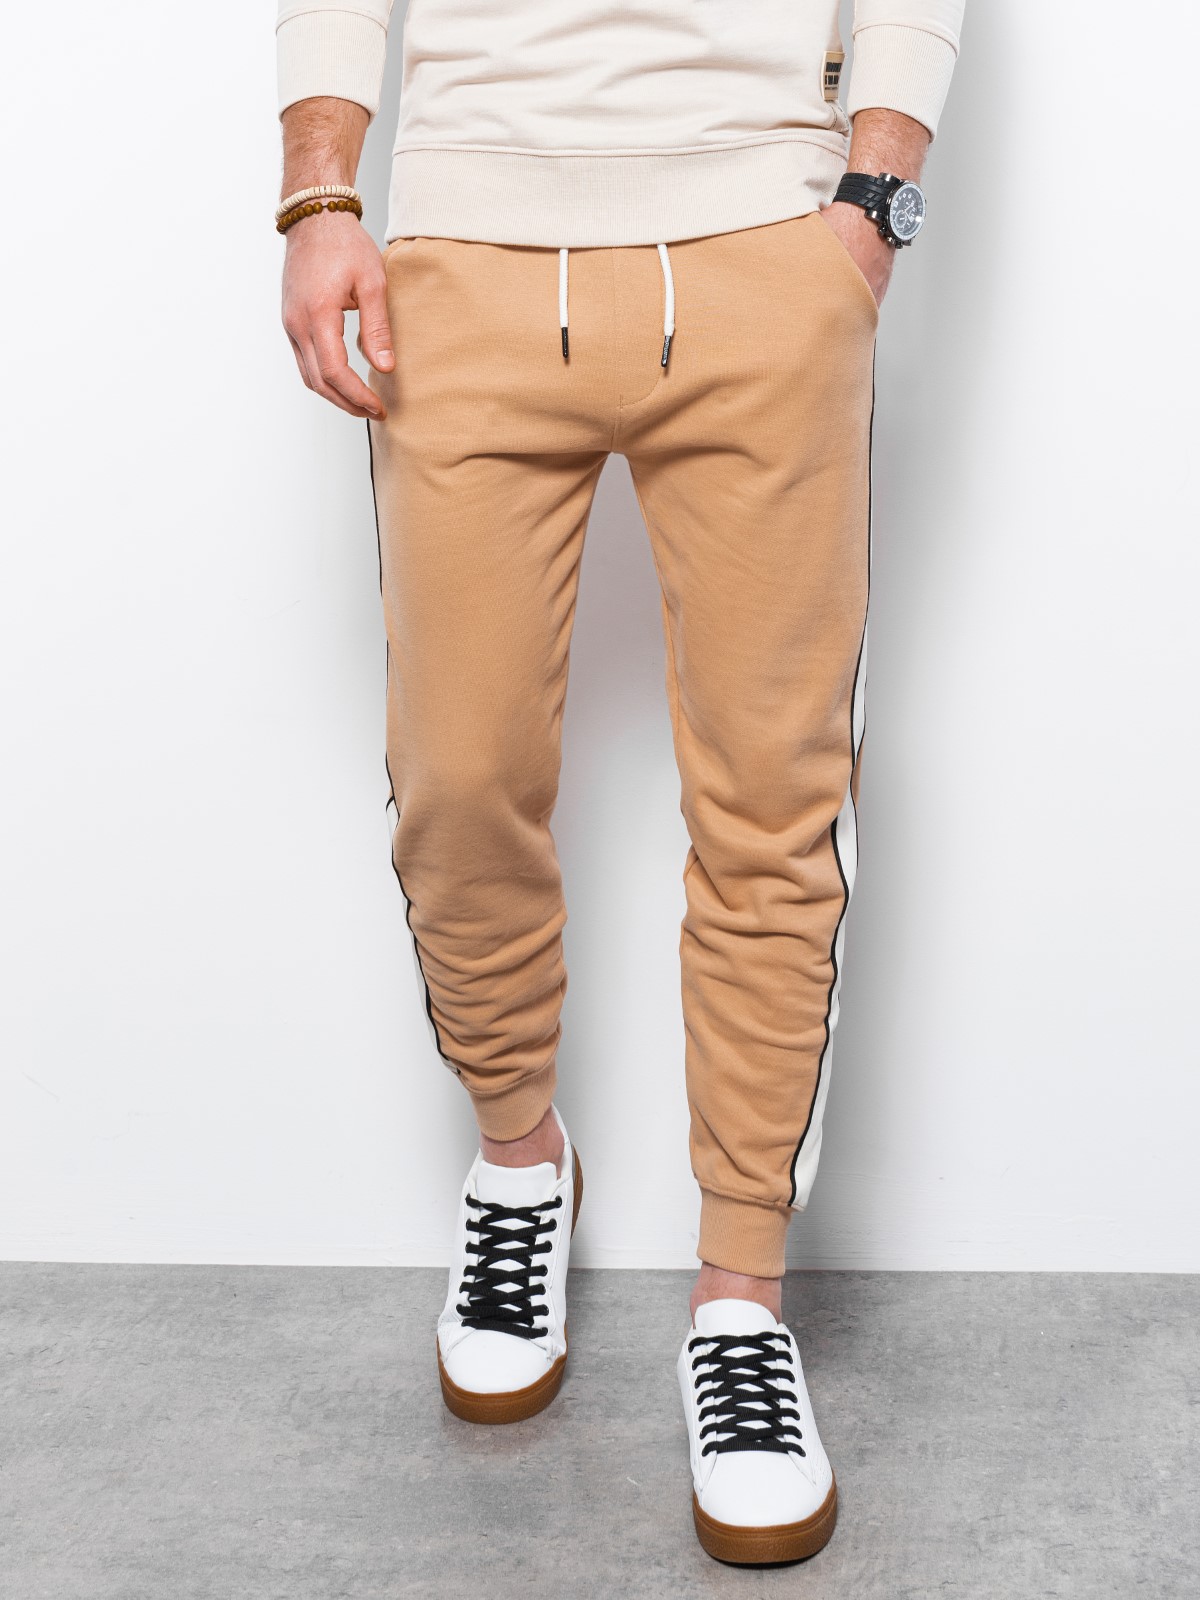 Men's sweatpants - light brown P947  MODONE wholesale - Clothing For Men